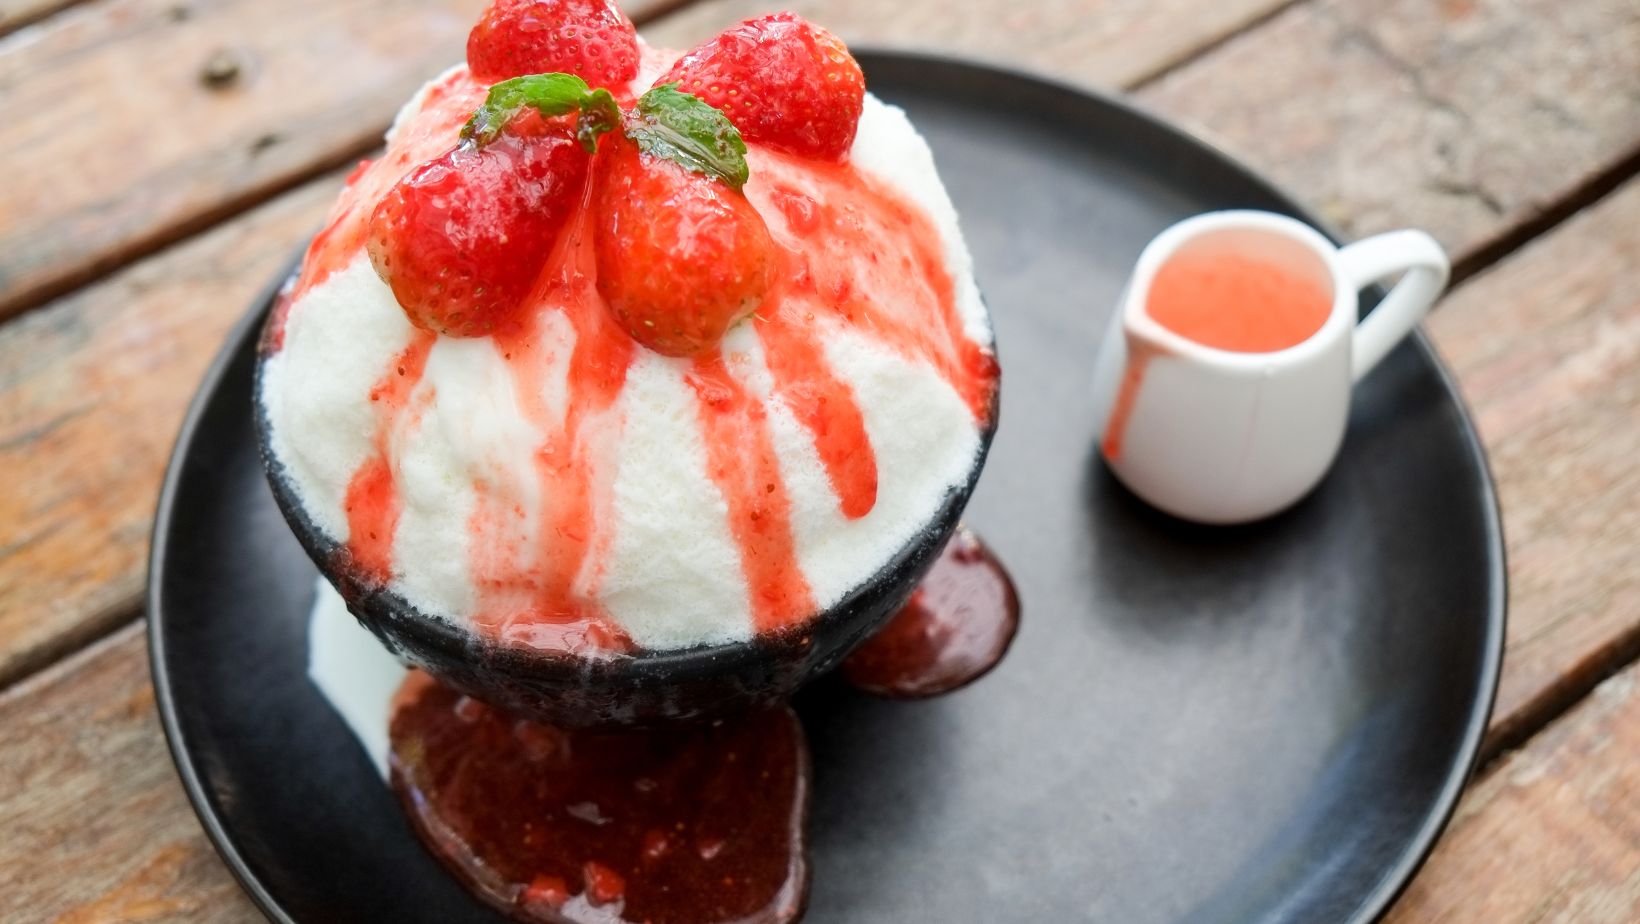 keto strawberry dessert recipes